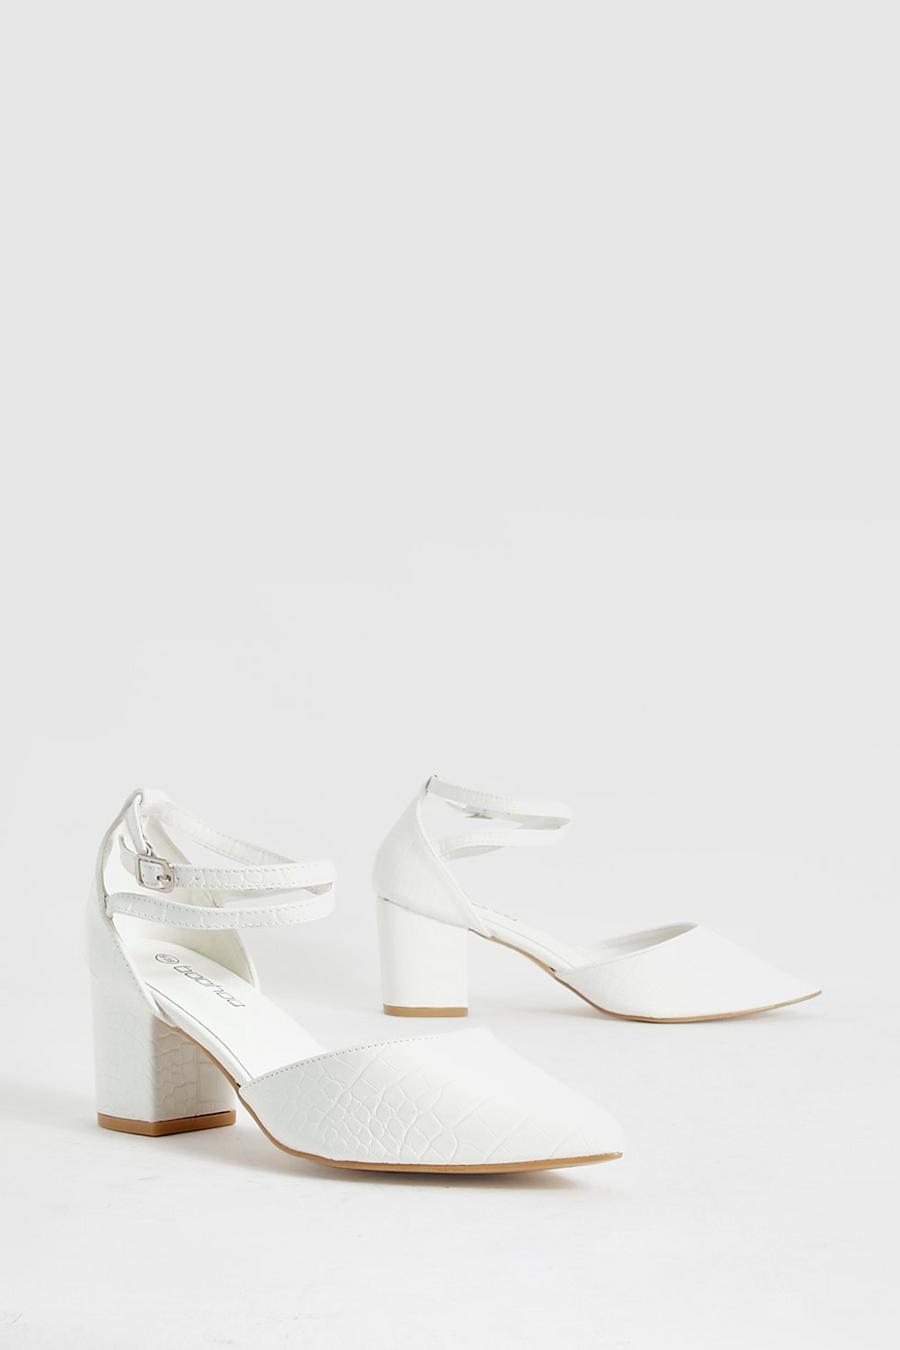 Sandales pointues effet croco à talon carré, White blanc